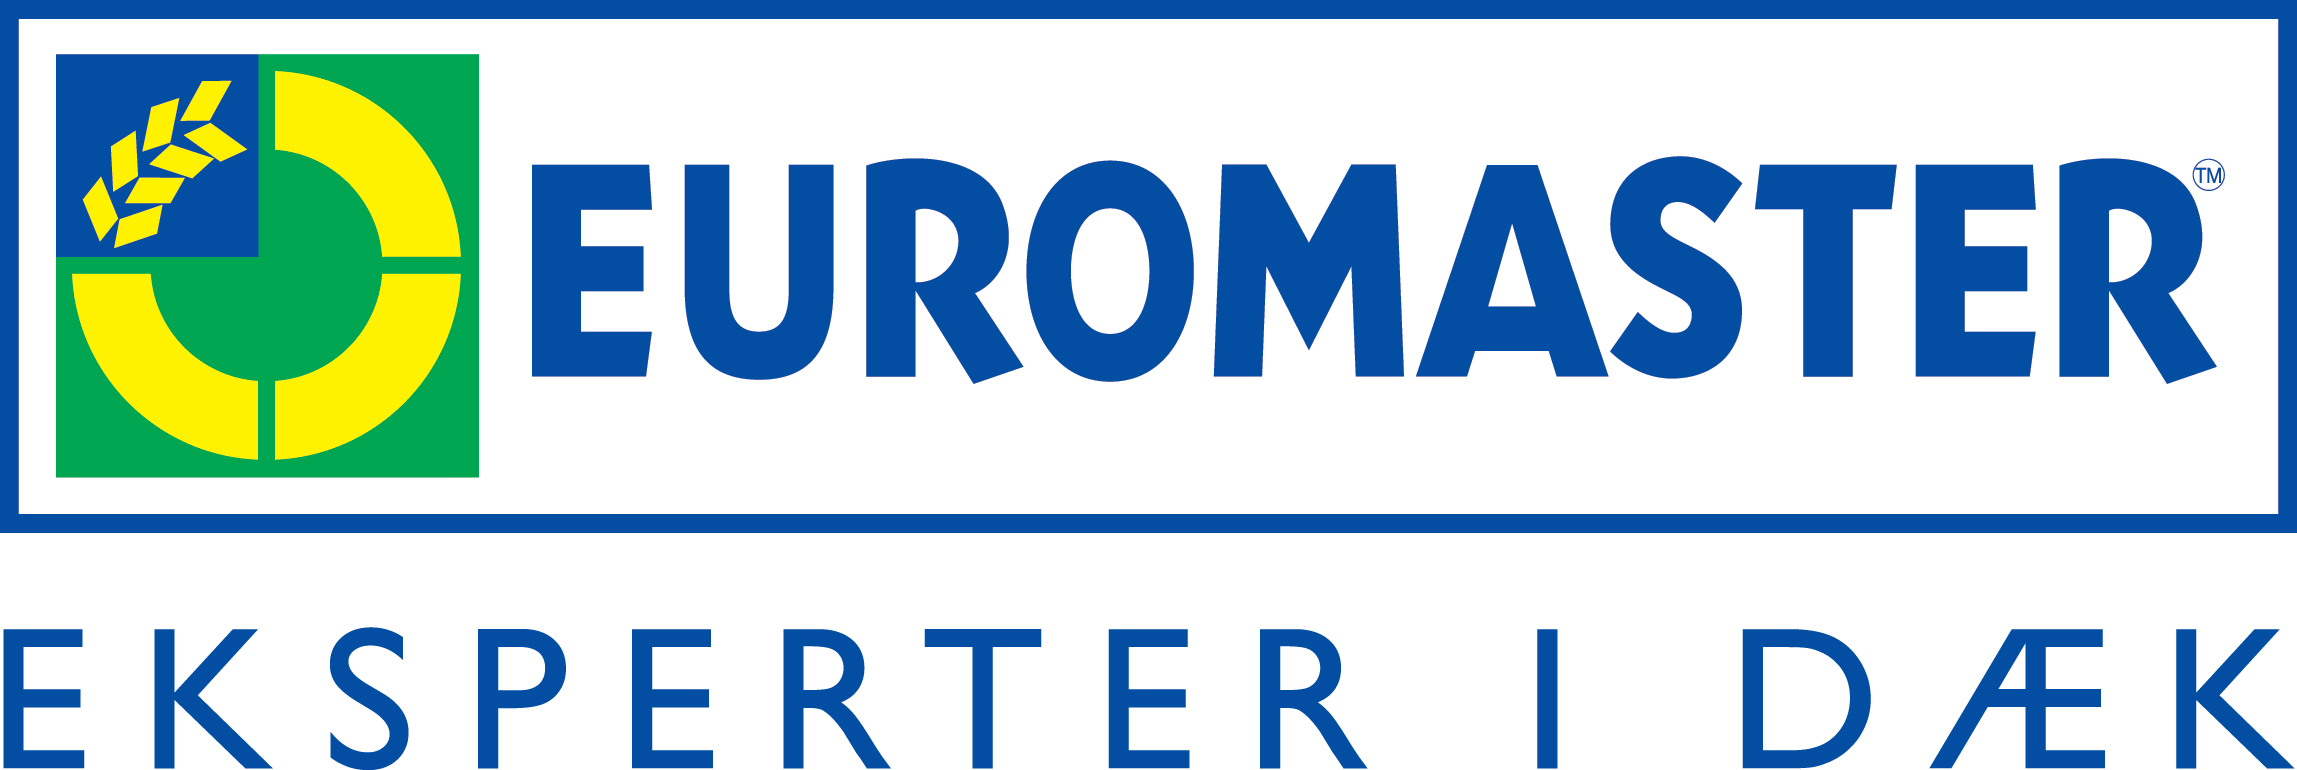 Euromaster Aalborg gammel logo